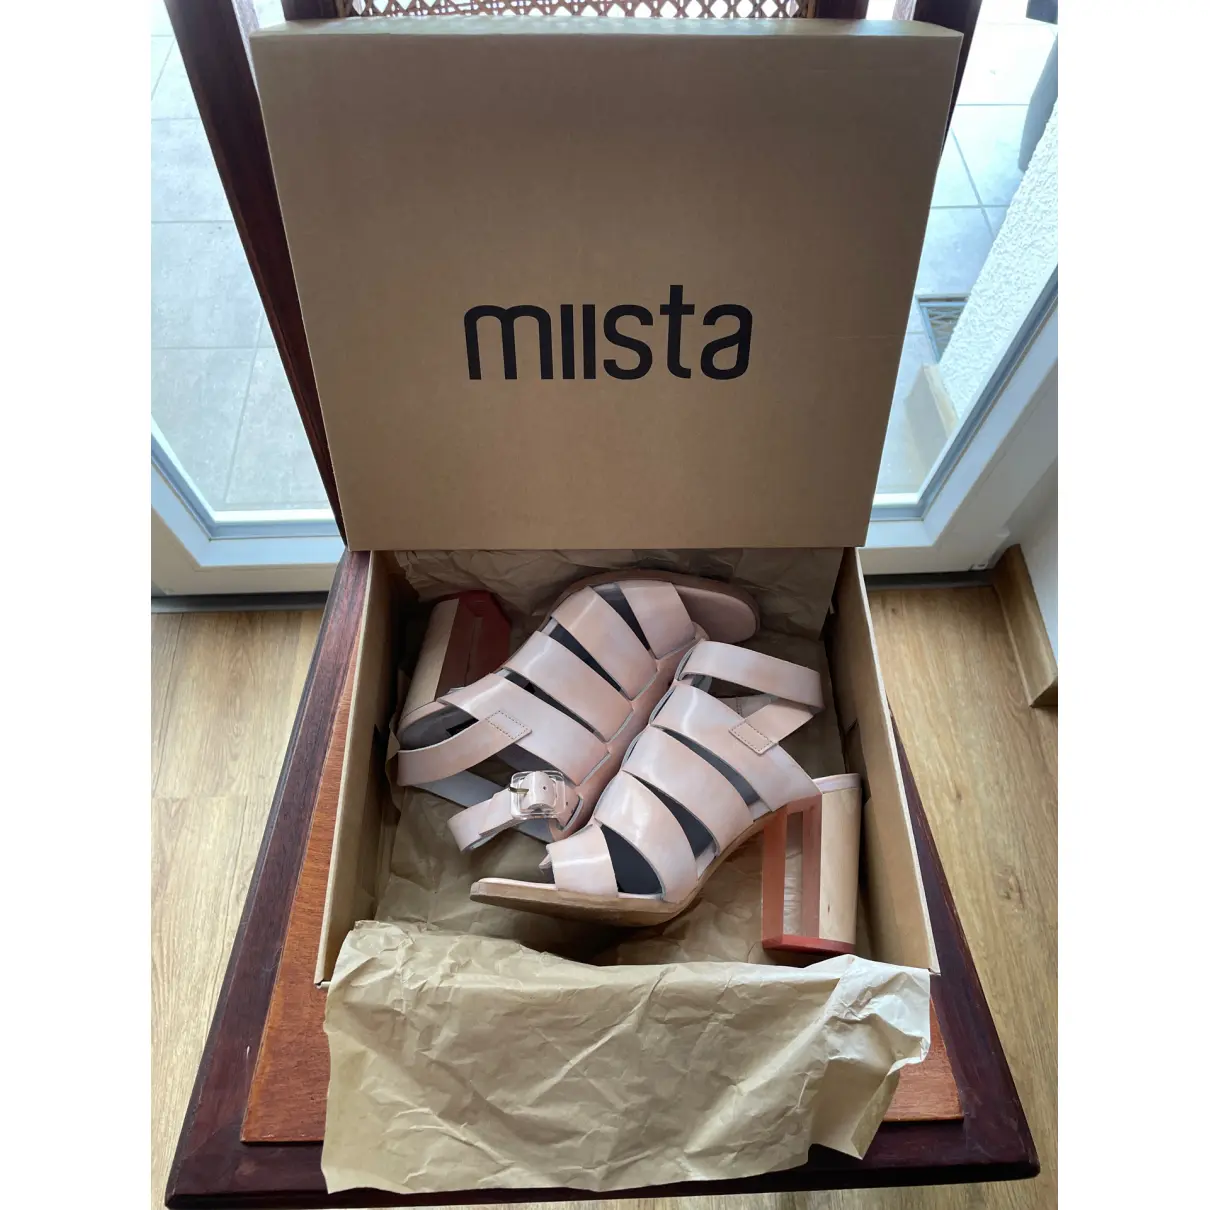 Buy Miista Leather sandals online